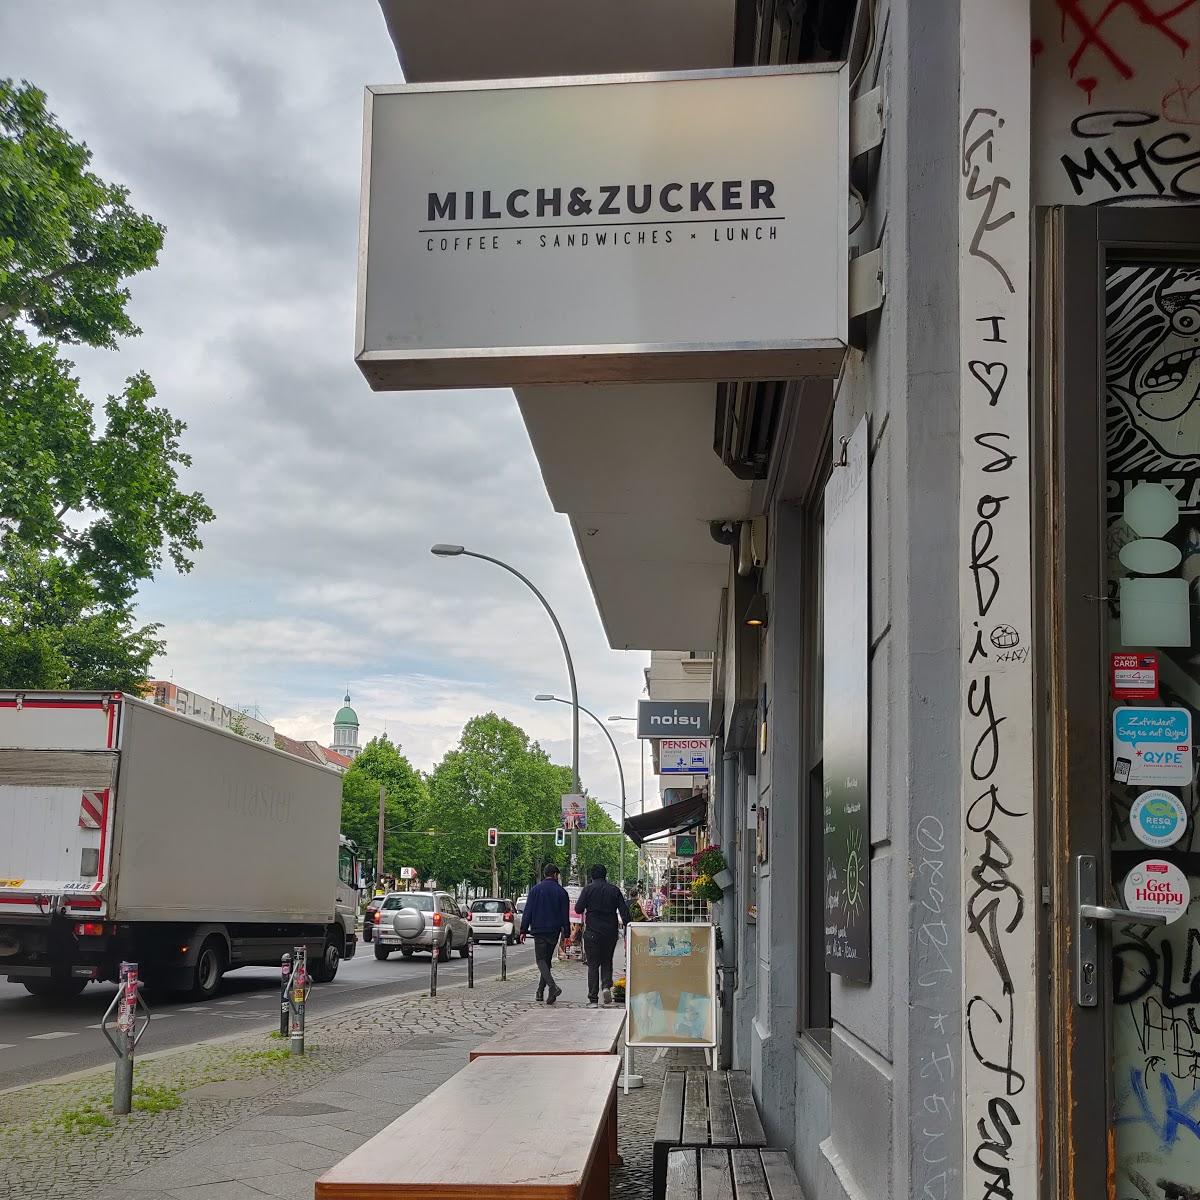 Restaurant "Milch&Zucker" in Berlin